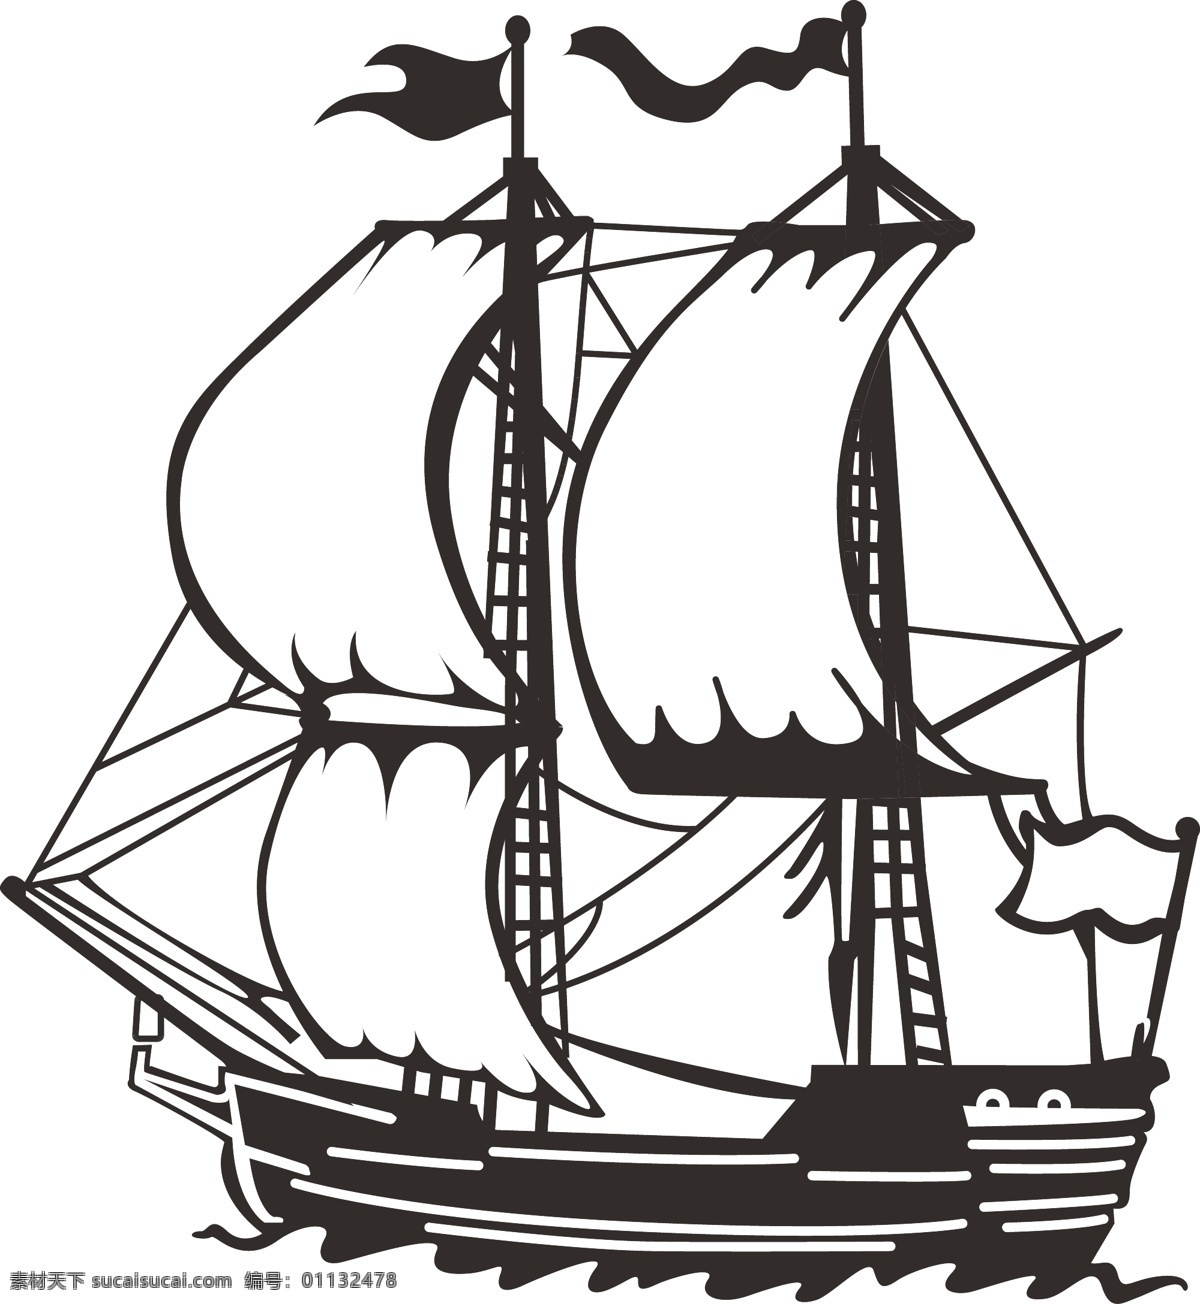 欧式 帆船 矢量图 复古帆船 欧式帆船 复古交通工具 帆船矢量图 帆布 矢量图插 现代科技 交通工具 白色